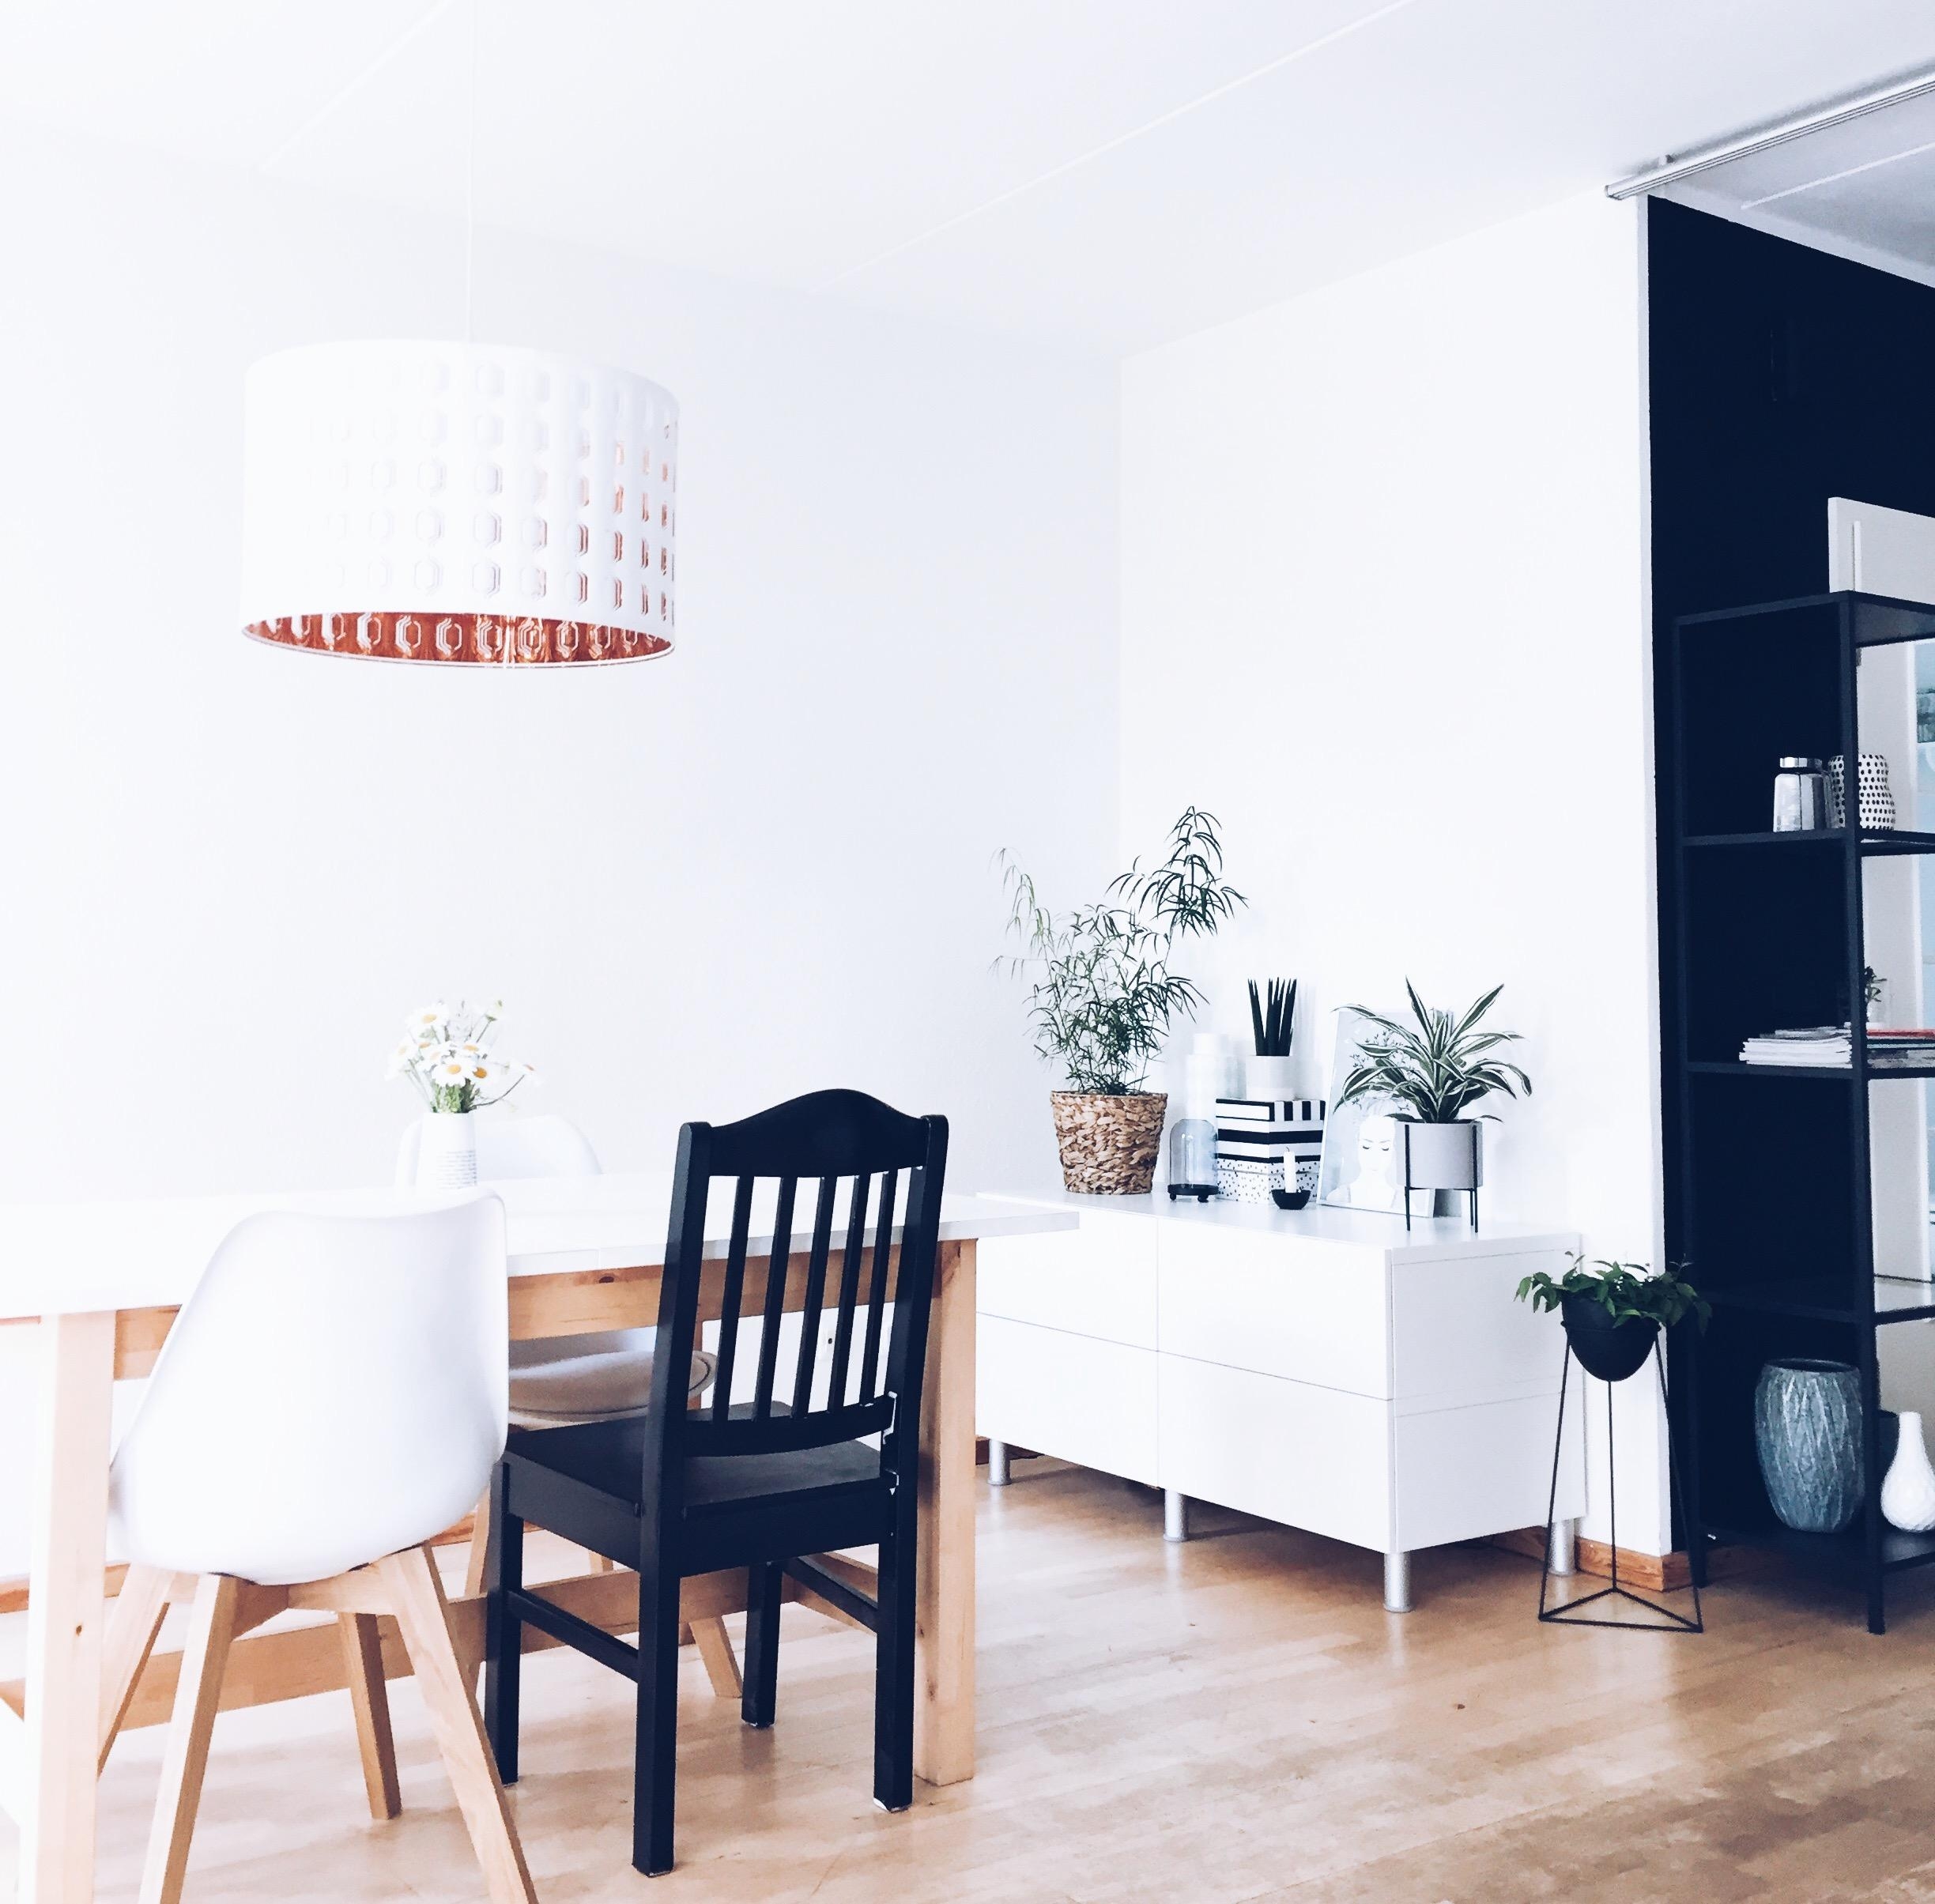 Essplatz im Wohnzimmer
#wohnzimmer #black #skandinavisch #solebeich #interior